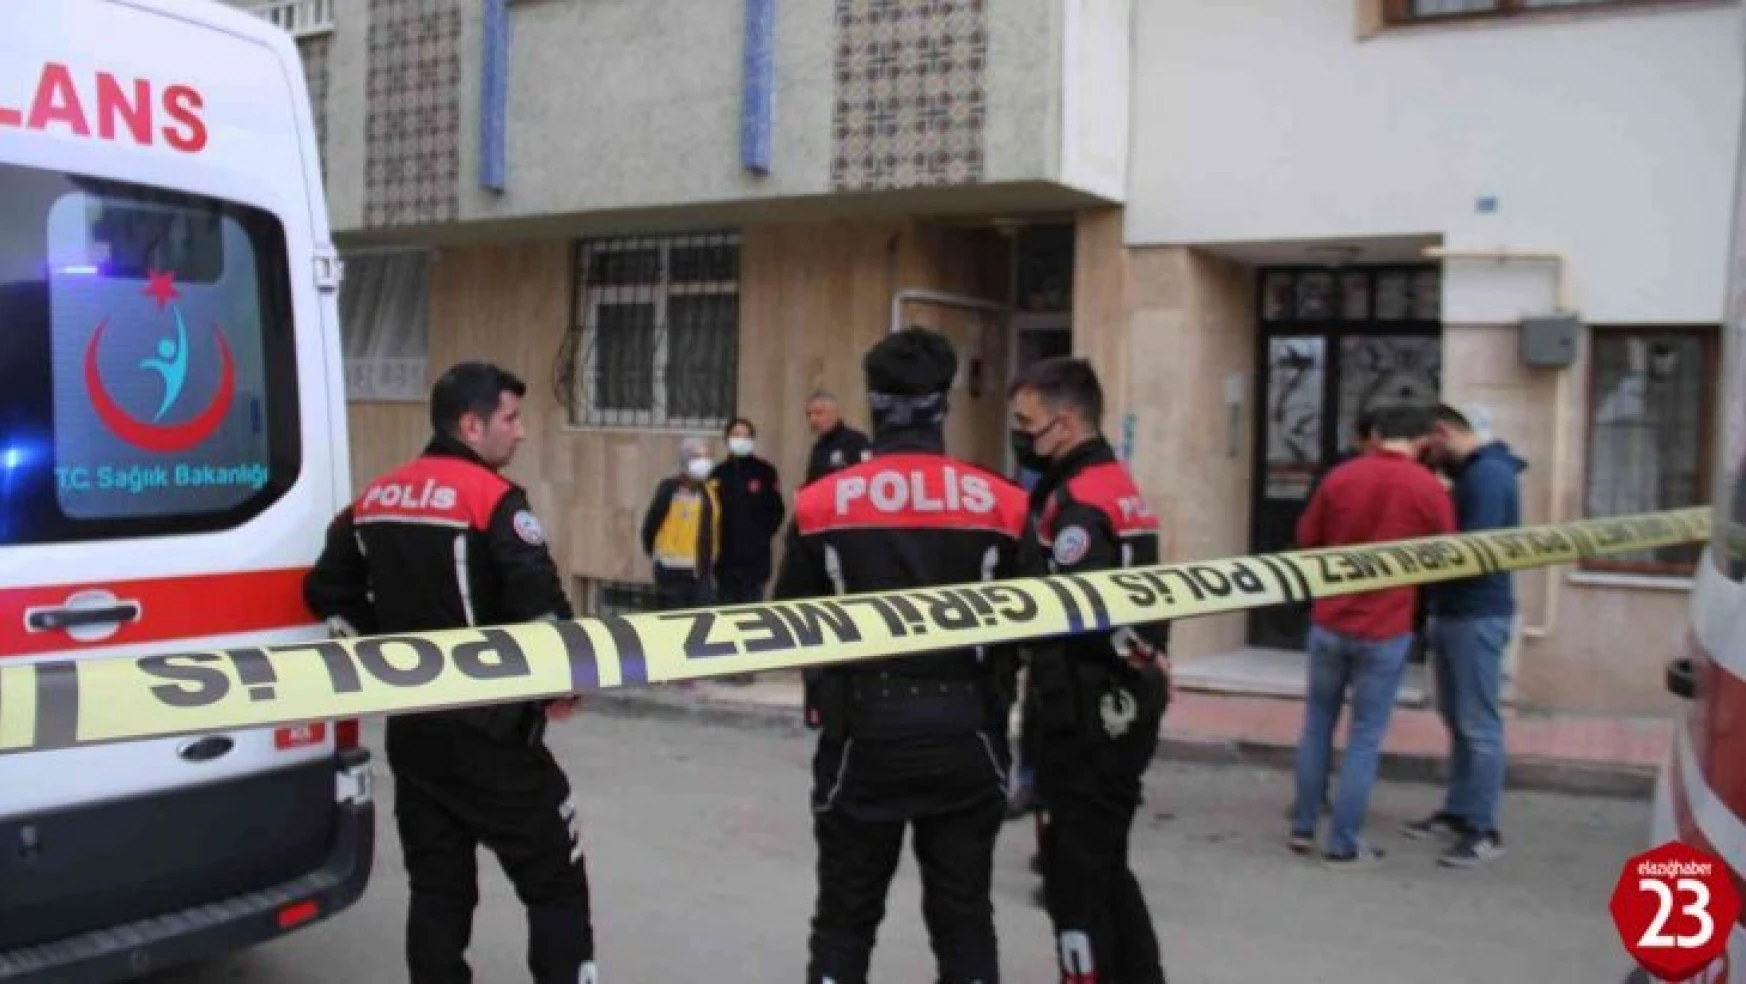 Elazığ'da Korkunç Cinayet, Cinnet Geçiren Damat Kurşun Yağdırdı, 2 Ölü 1 Yaralı